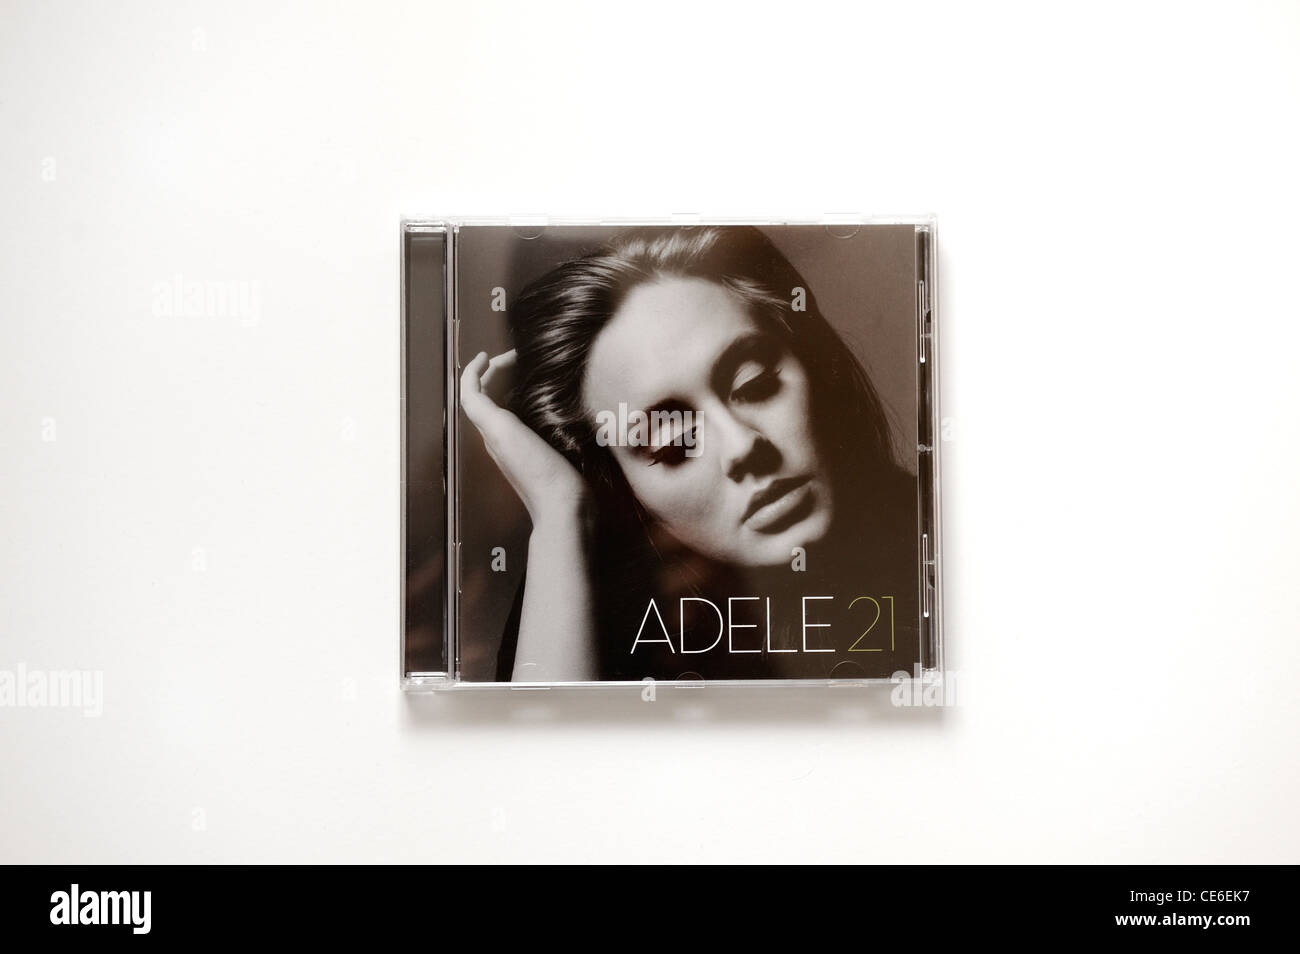 Adele Adkins Bestseller-cd Album 21 Stockfoto